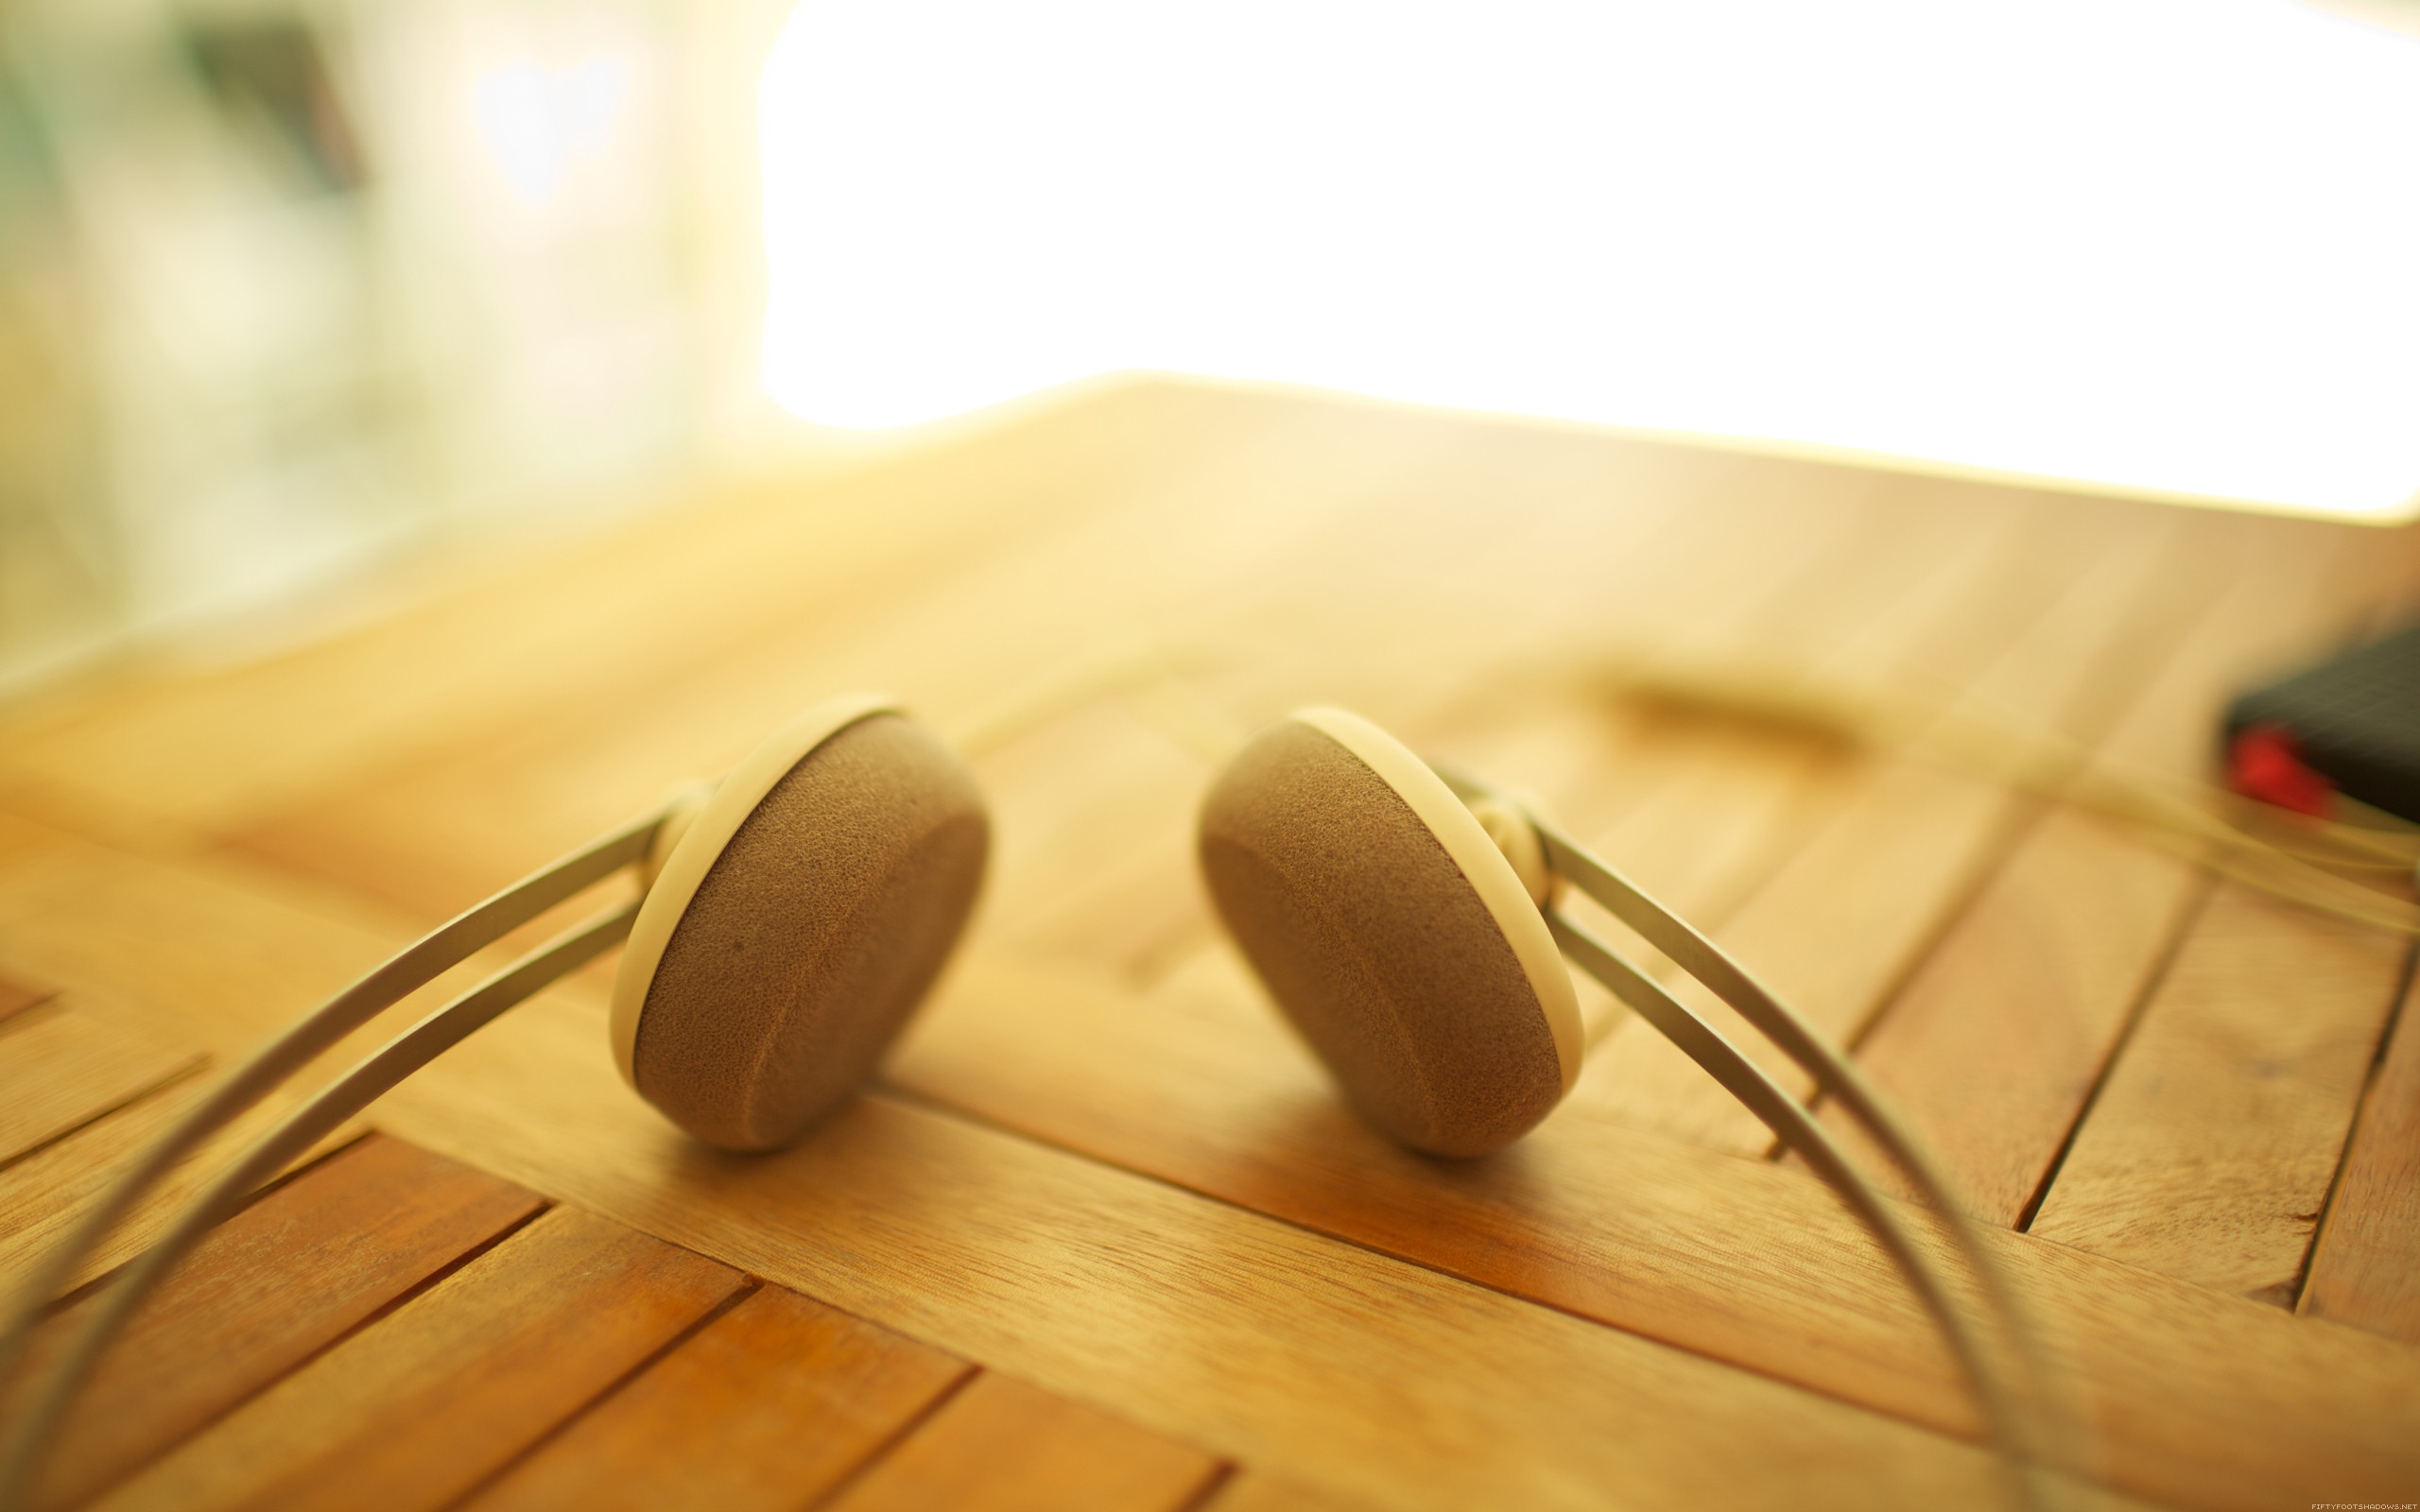 General 2560x1600 headphones indoors wooden surface